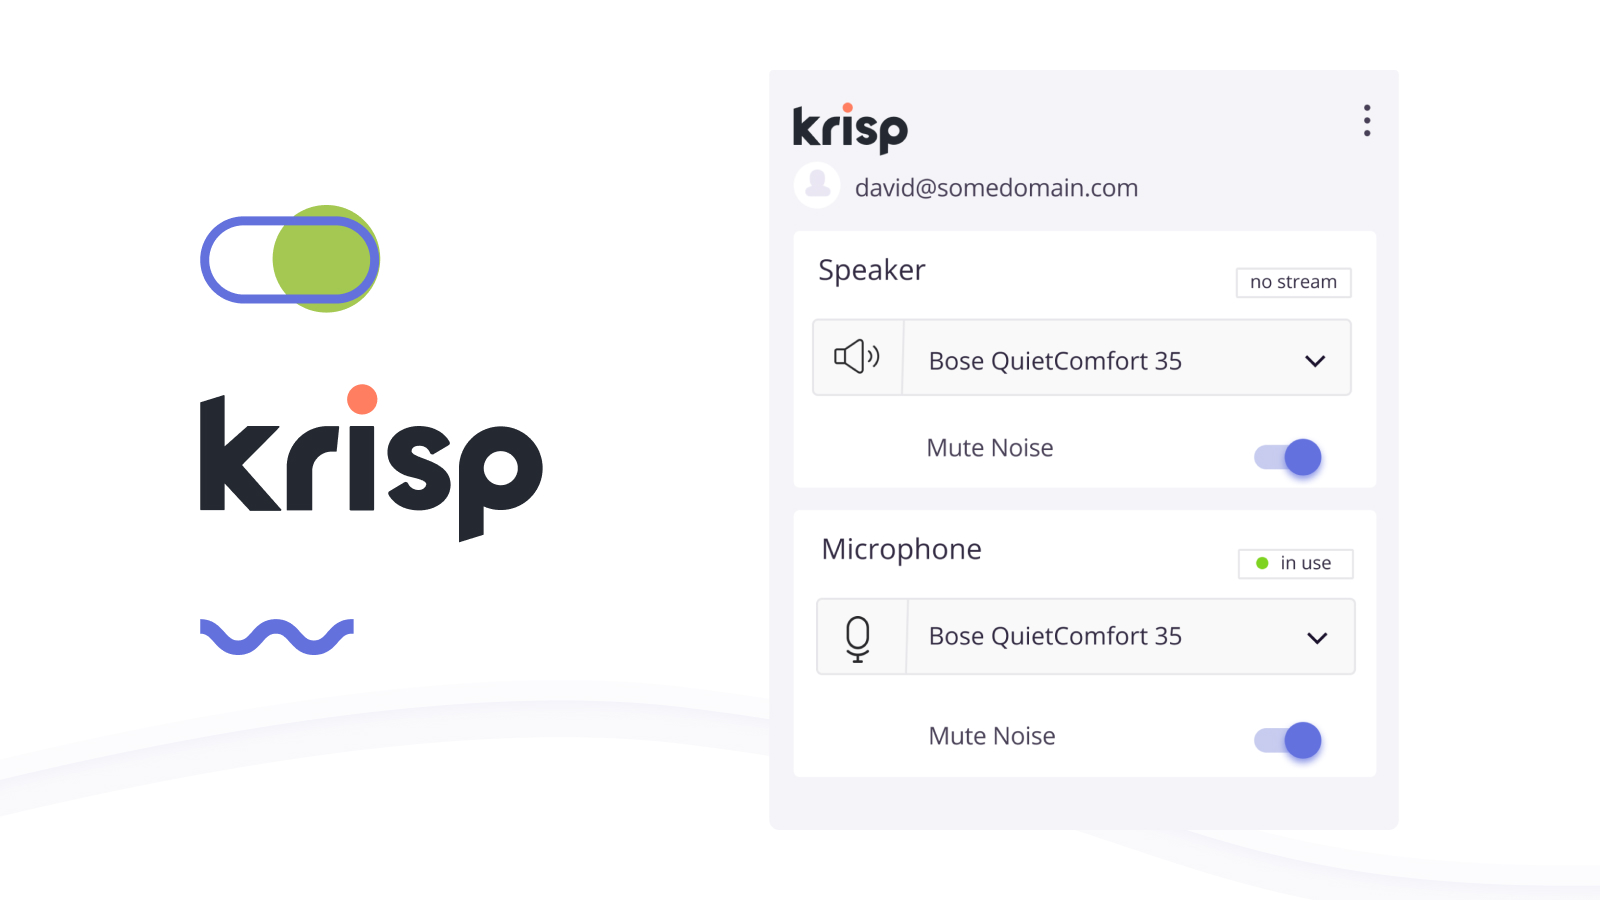 Find detailed information about Krisp